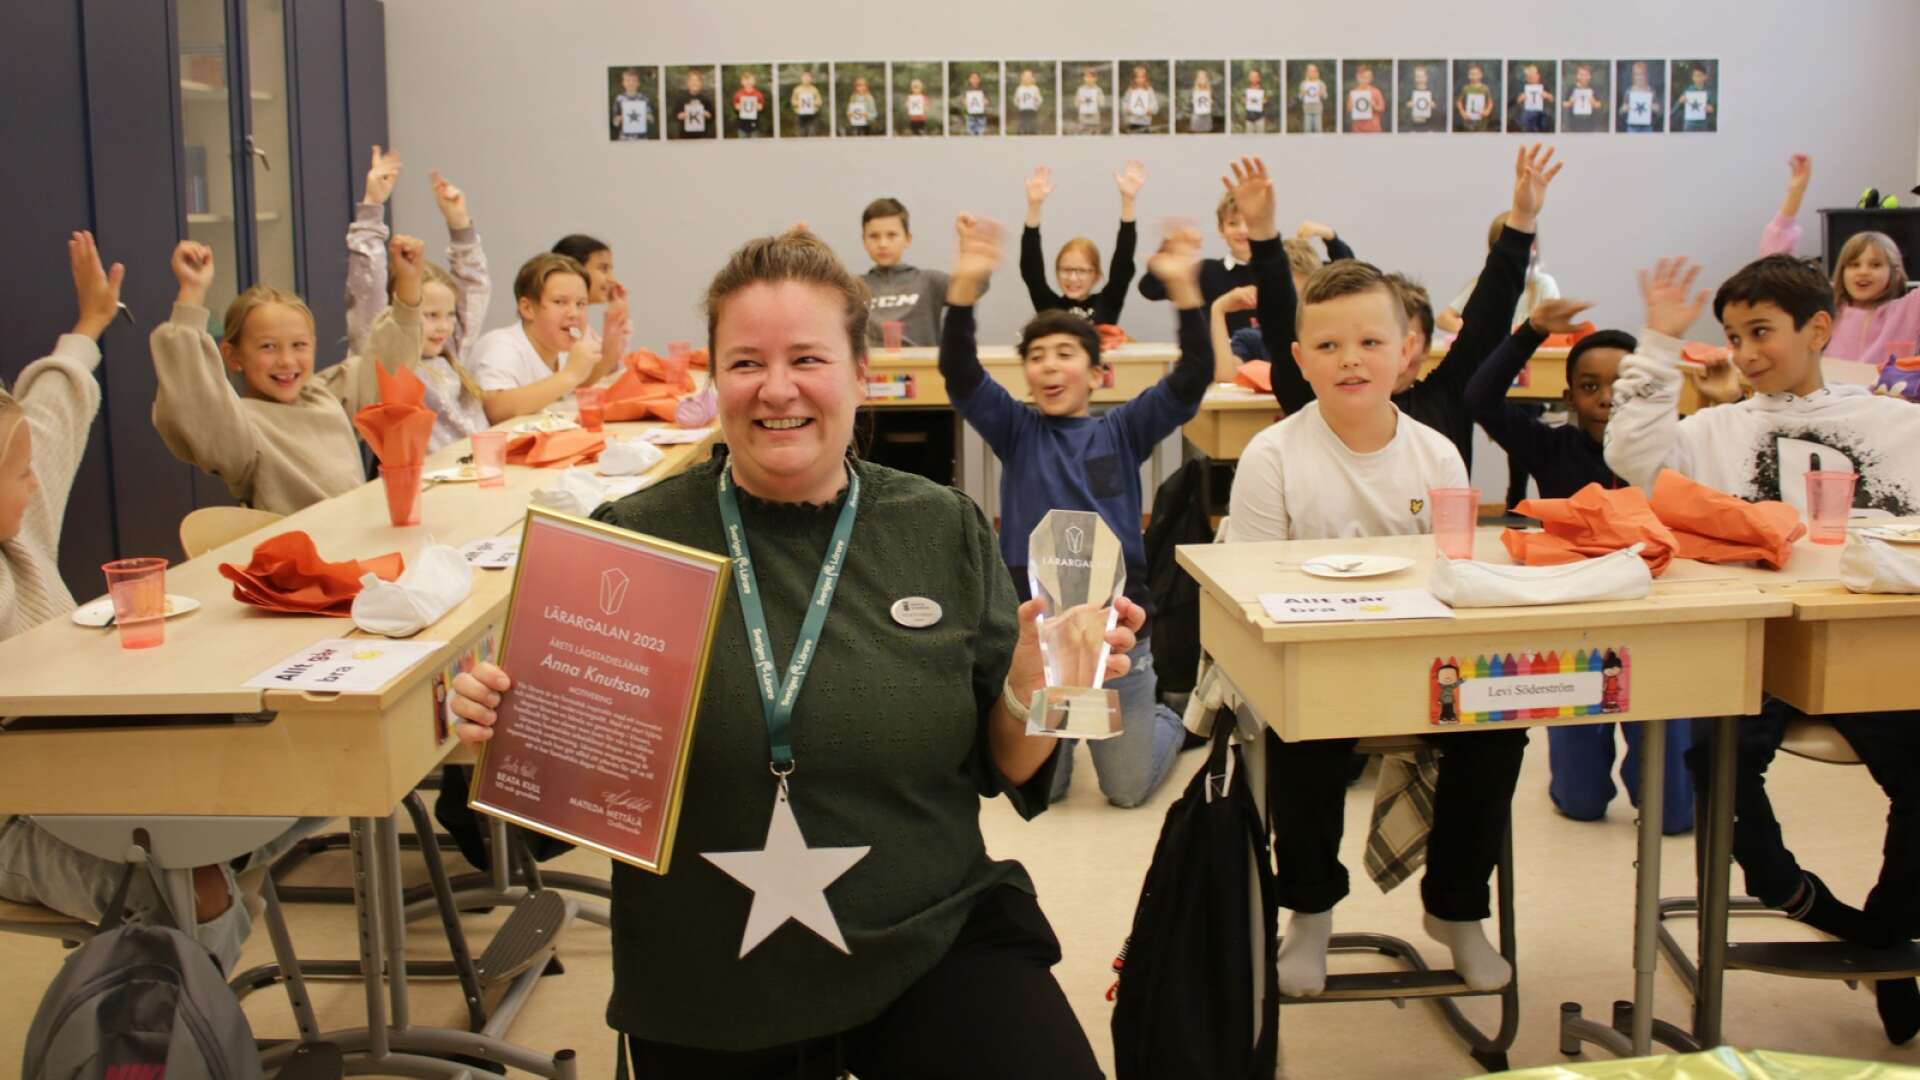 Anna Knutsson är Årets lågstadielärare i Sverige. Under tisdagen firades hos av sin klass, föräldrar och rektor.